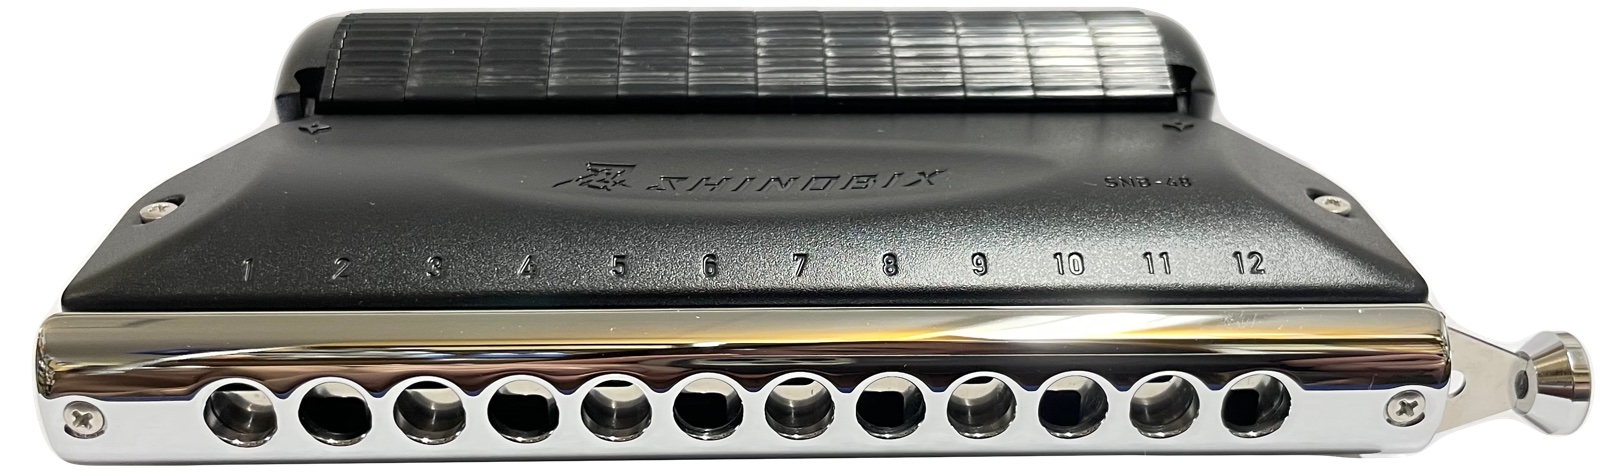 16128円 マーケット 16128円 最大69％オフ SUZUKI スズキ SNB-48 忍 SHINOBIX サイレンサー付き クロマチックハーモニカ フルセット シノビクス 消音器 chromatic harmonica mute silencer